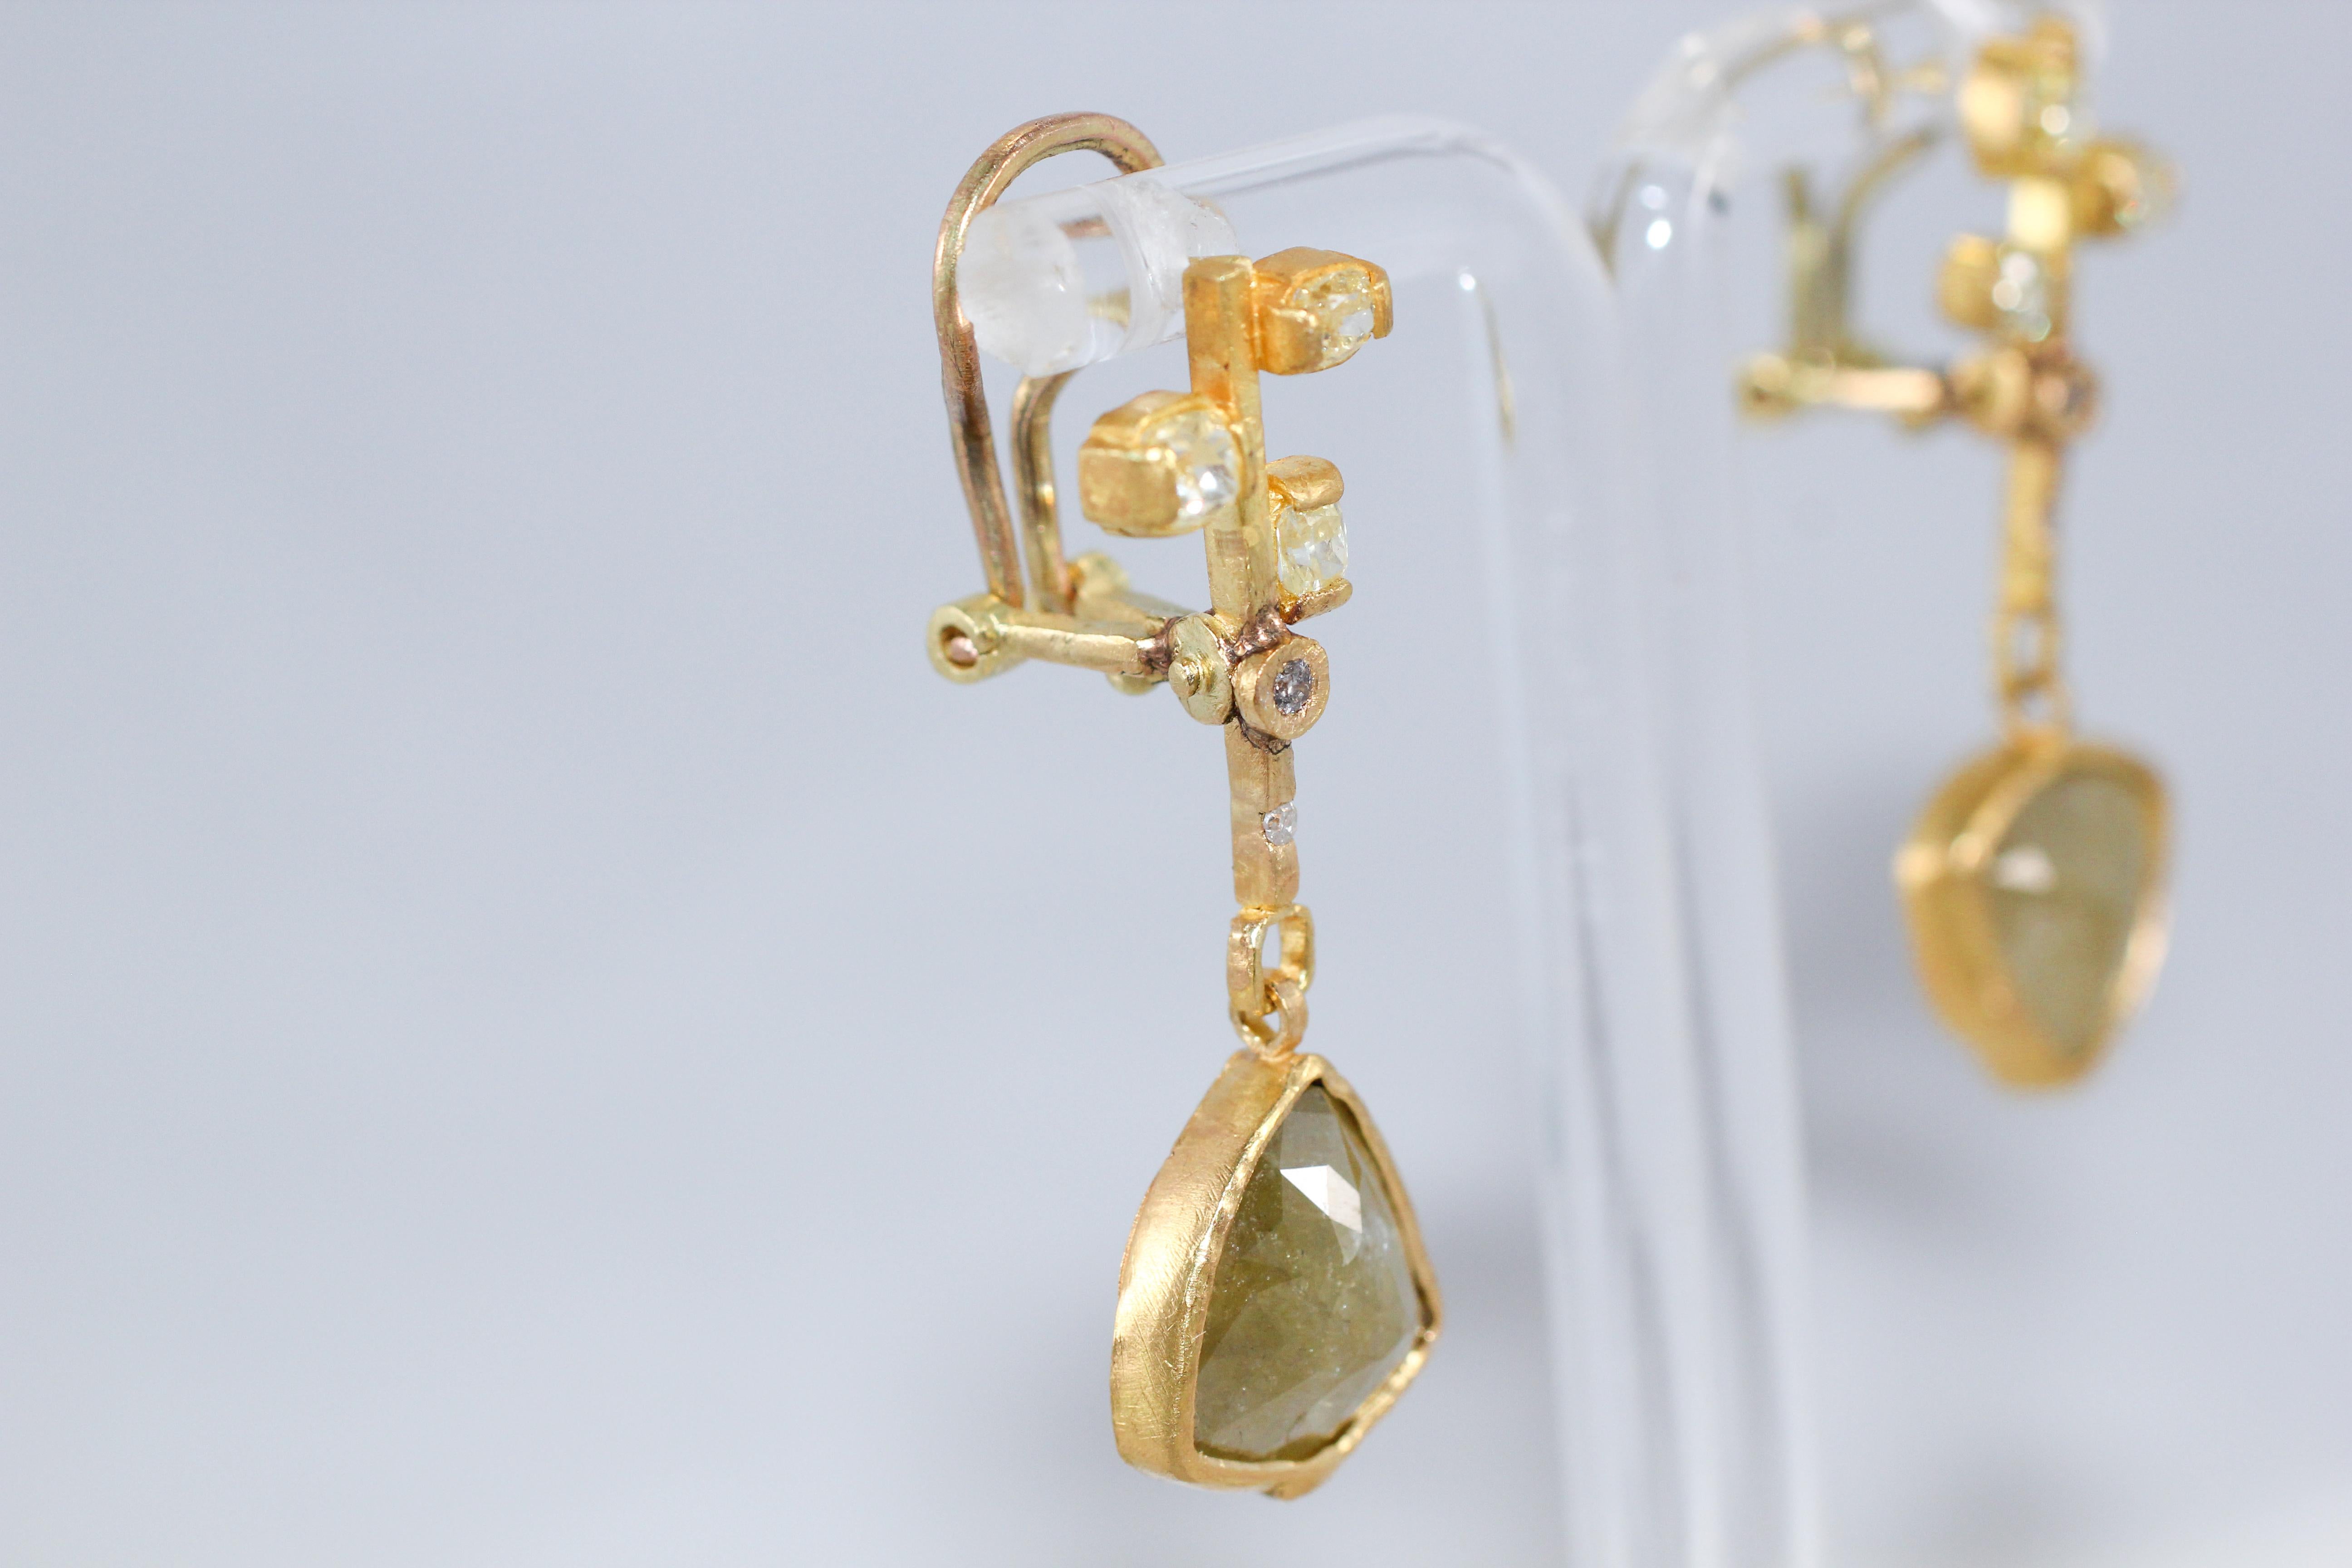 9.3 Carat Yellow Diamonds 21-22k Gold Chandelier Drop Earrings Wedding Jewelry For Sale 1